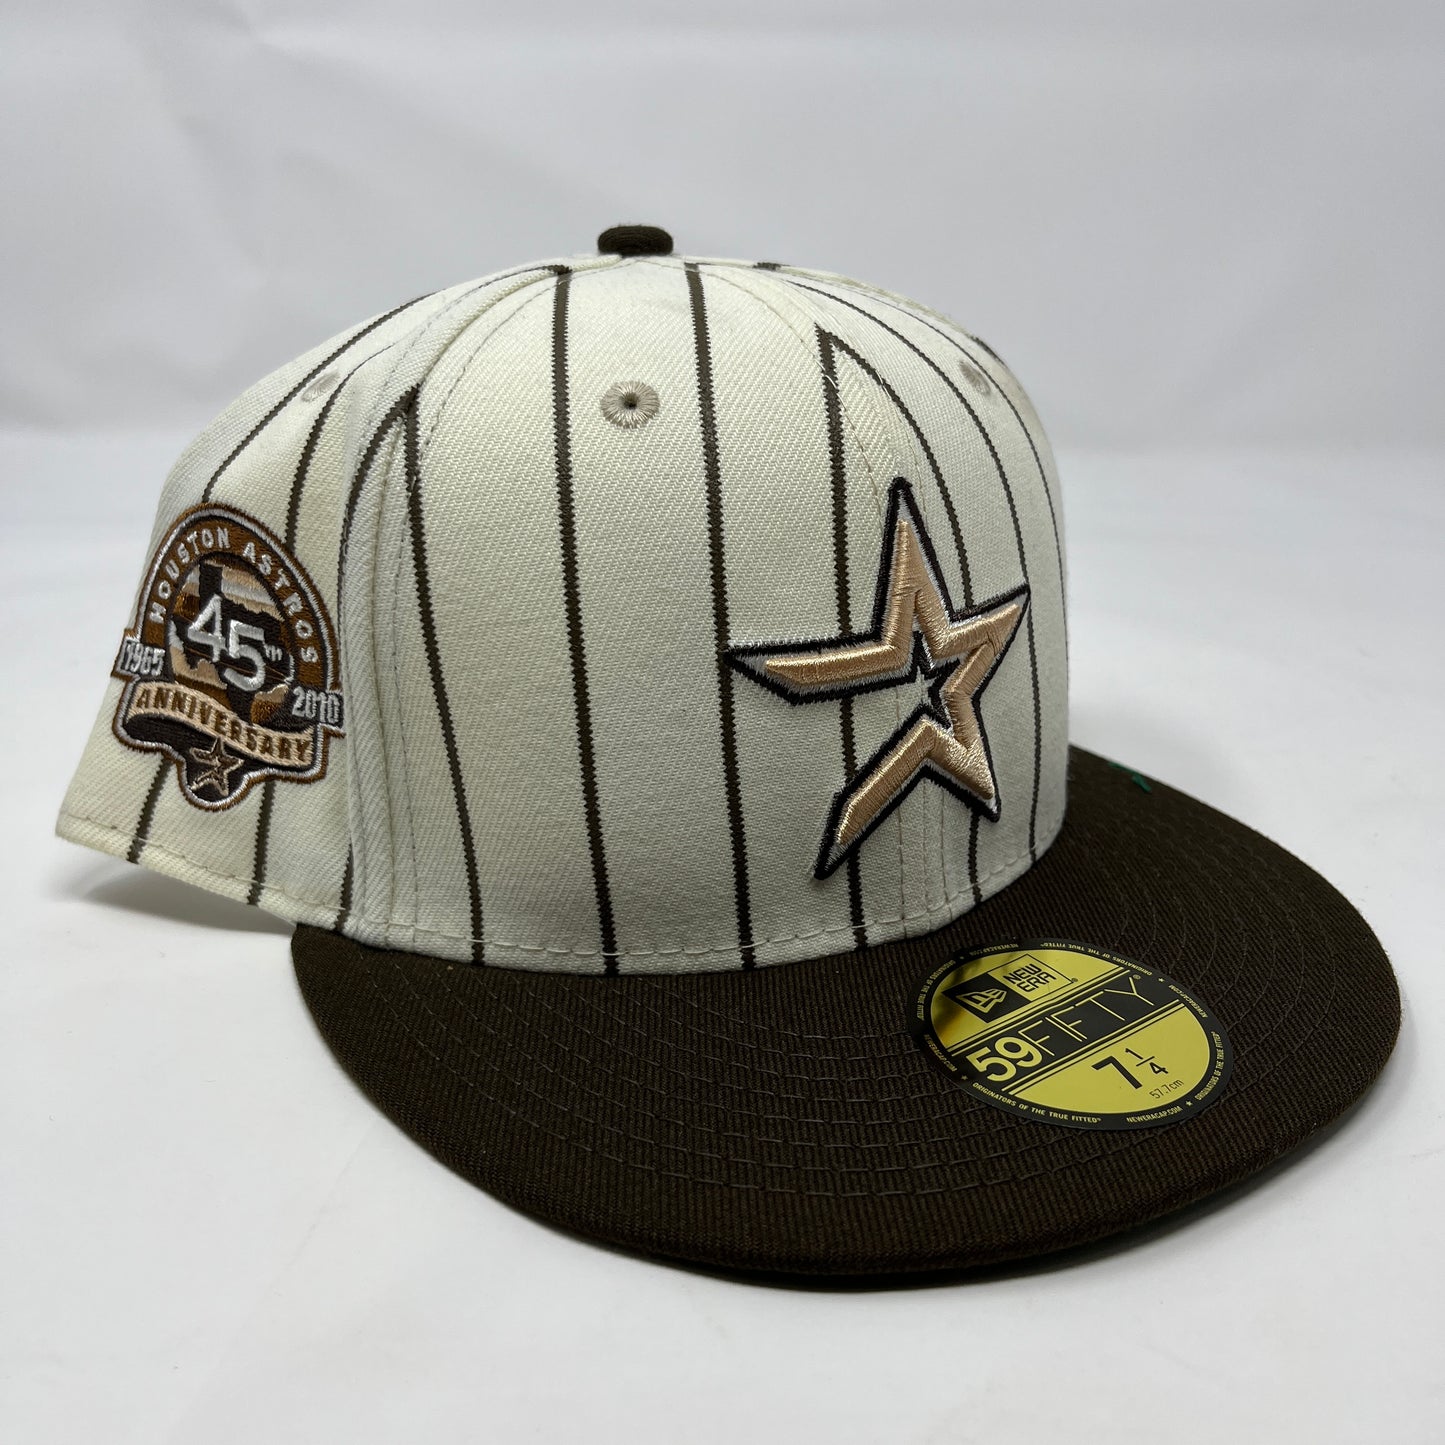 Astros Pinstripe Open Star Hat